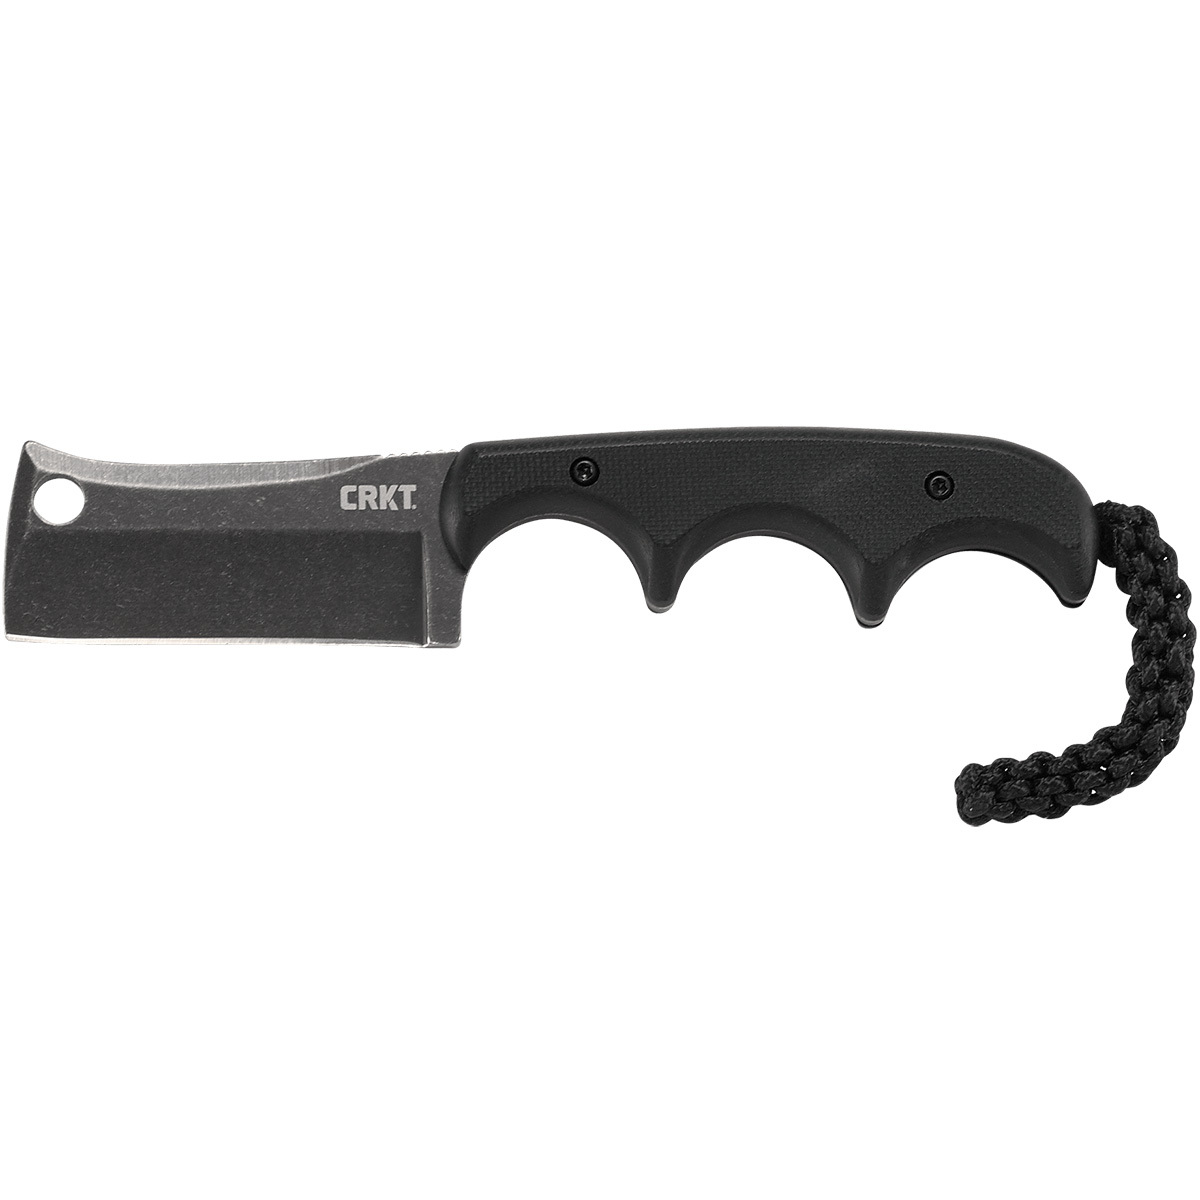 Шейный нож с фиксированным клинком CRKT Minimalist Cleaver Blackout, сталь 5Cr15MoV, рукоять G10